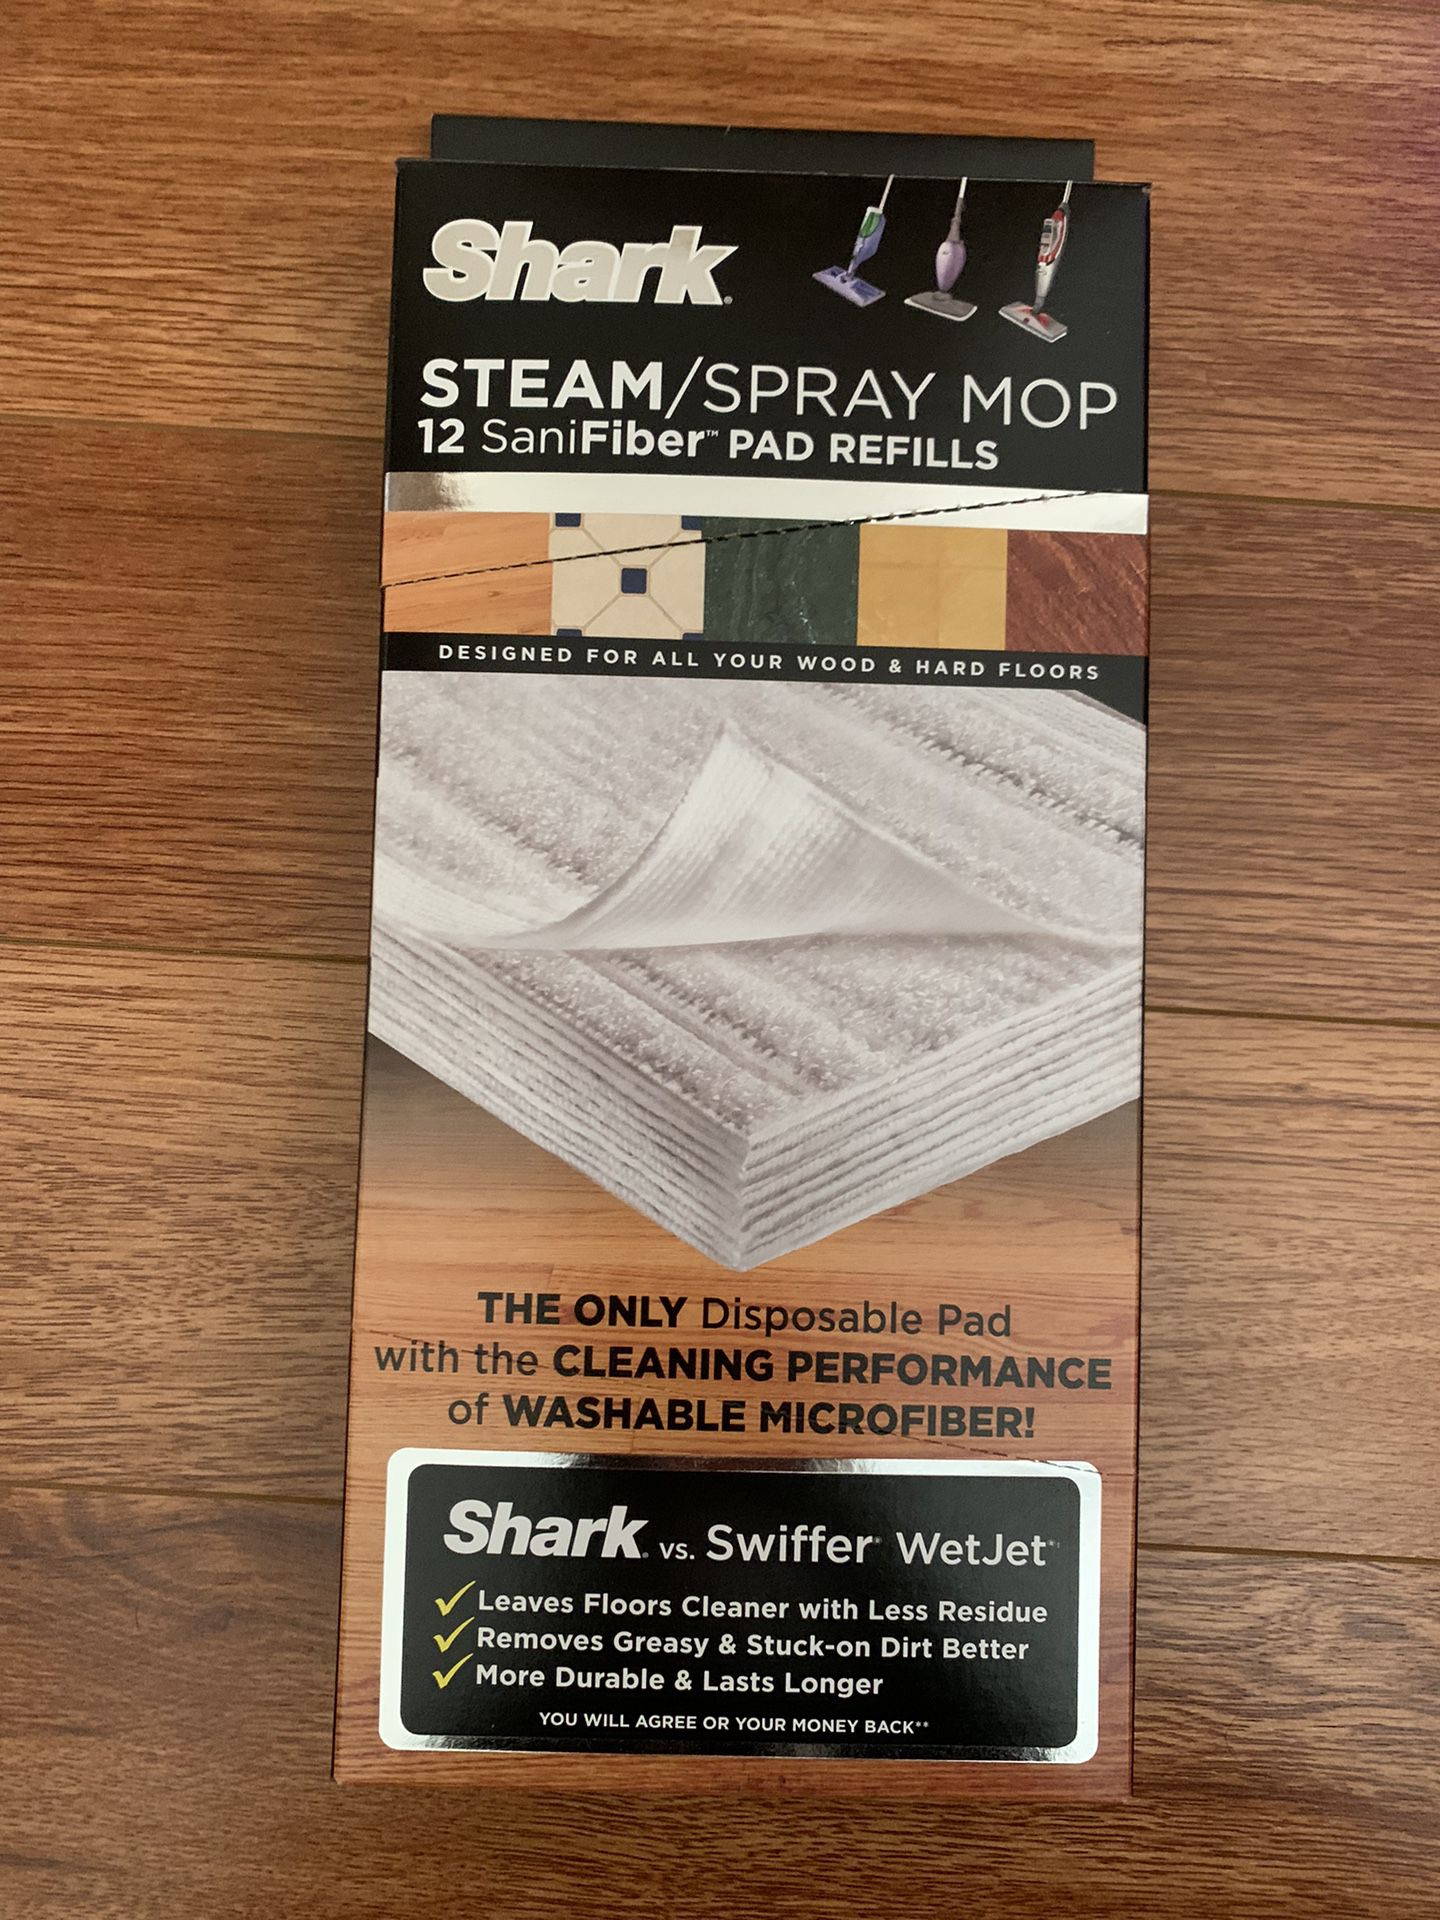 SHARK - Steam/Spray Mop SaniFiber 12 Pad refill